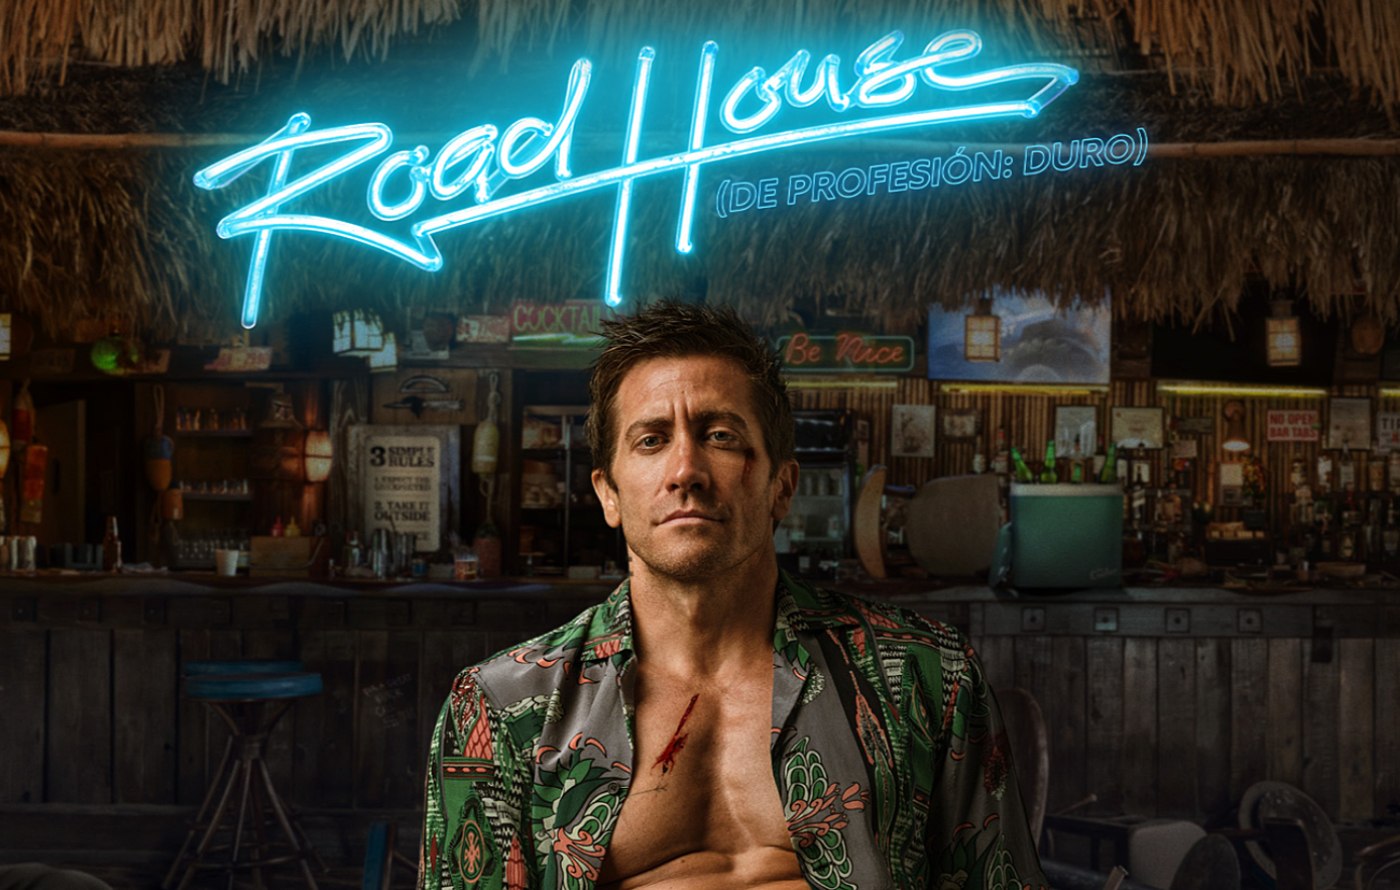 Road House De profesión: Duro protagonizada por Jake Gyllenhaal, estreno en Prime Video el jueves 21 de marzo